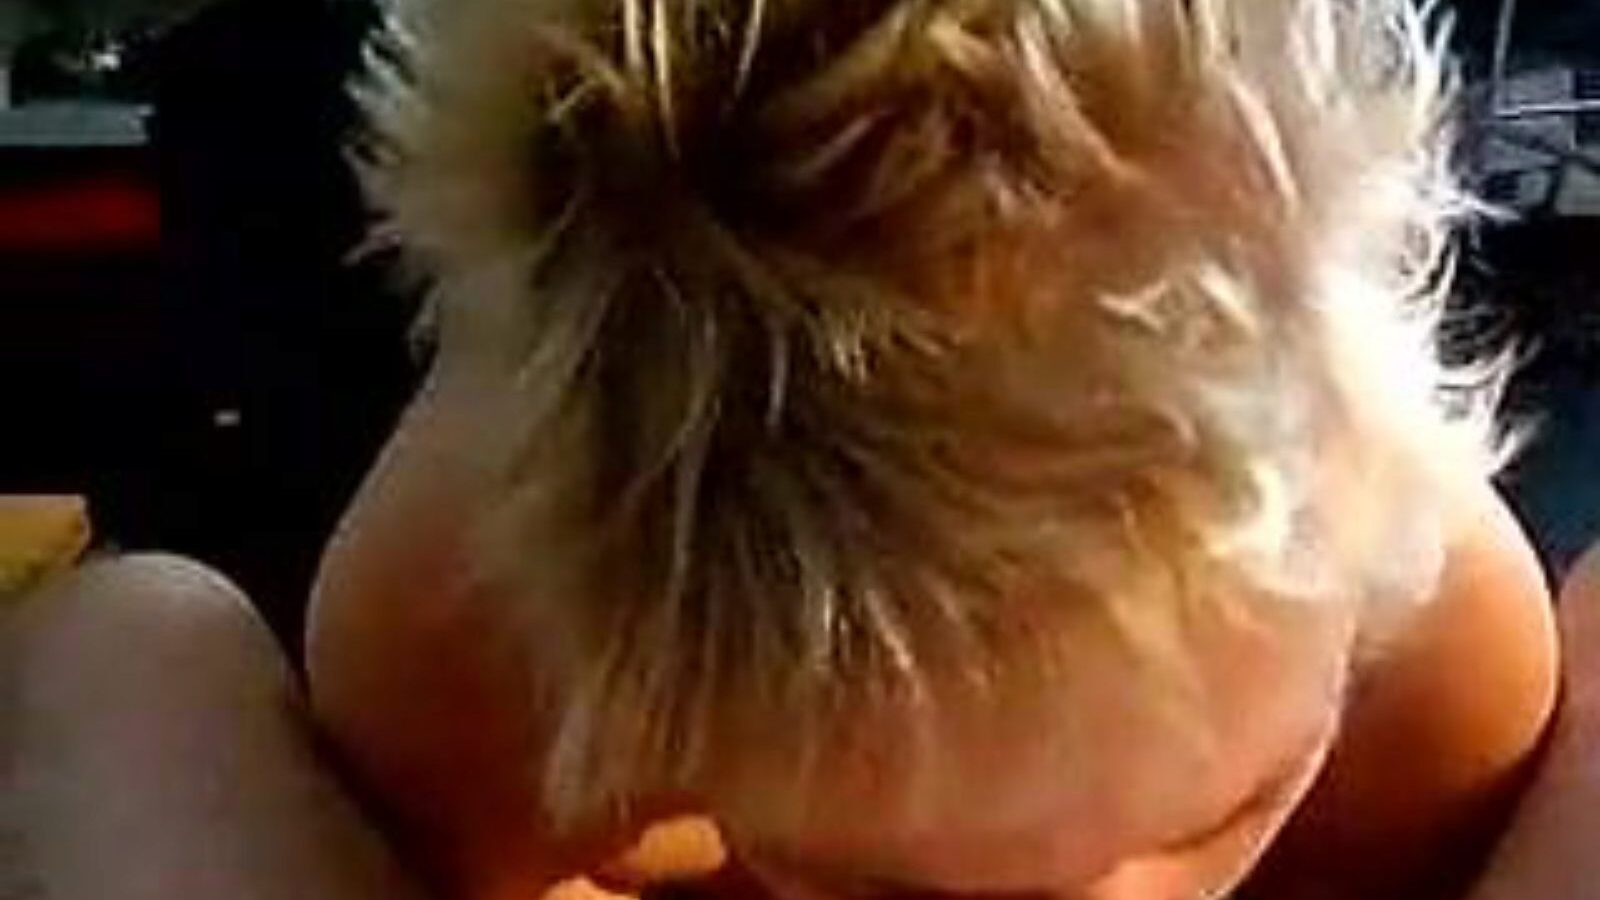 leuke дамочка: домашний и девочка порно видео a6 - xhamster смотреть leuke дама трубки fuckfest кино бесплатно на xhamster для, с самой горячей коллекцией голландских самодельным, девочек и сосущими порнографическими видео концертов